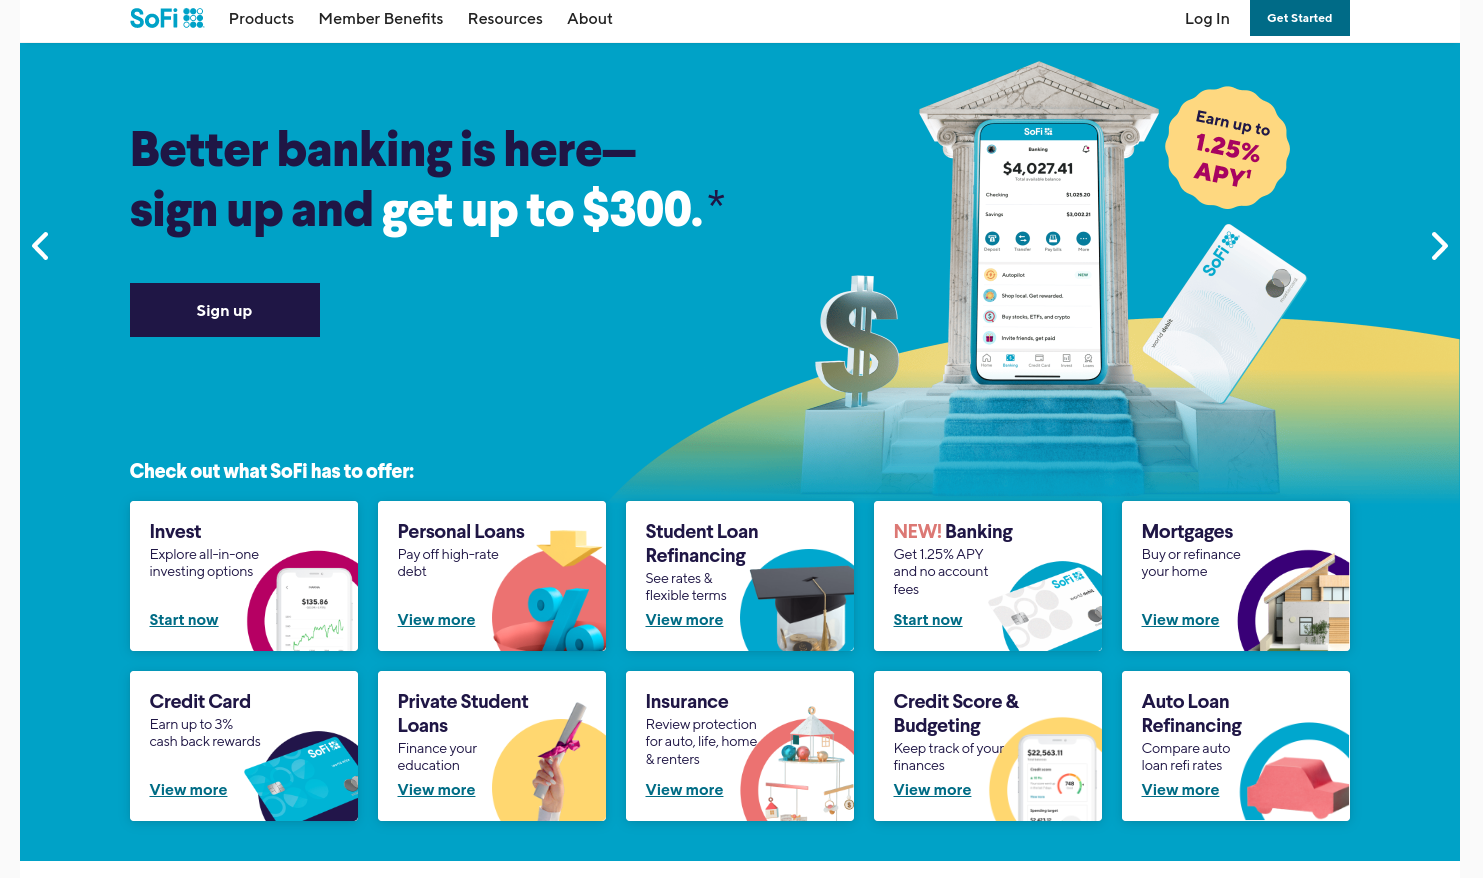 Strona główna banku Sofi jest wypełniona różnymi hasłami reklamującymi jego usługi fintechowe